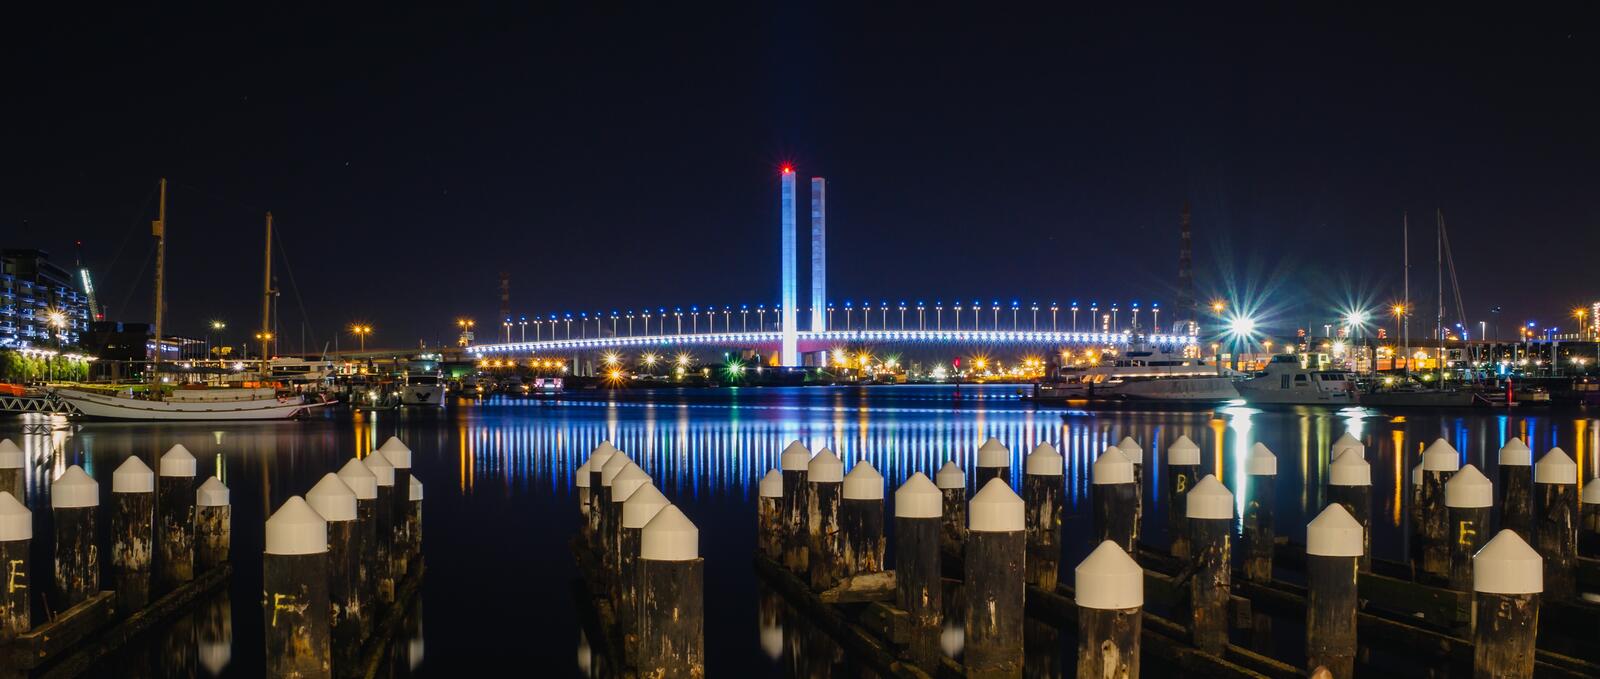 Бесплатное фото Вид на подсвеченный мост через реку в ночи